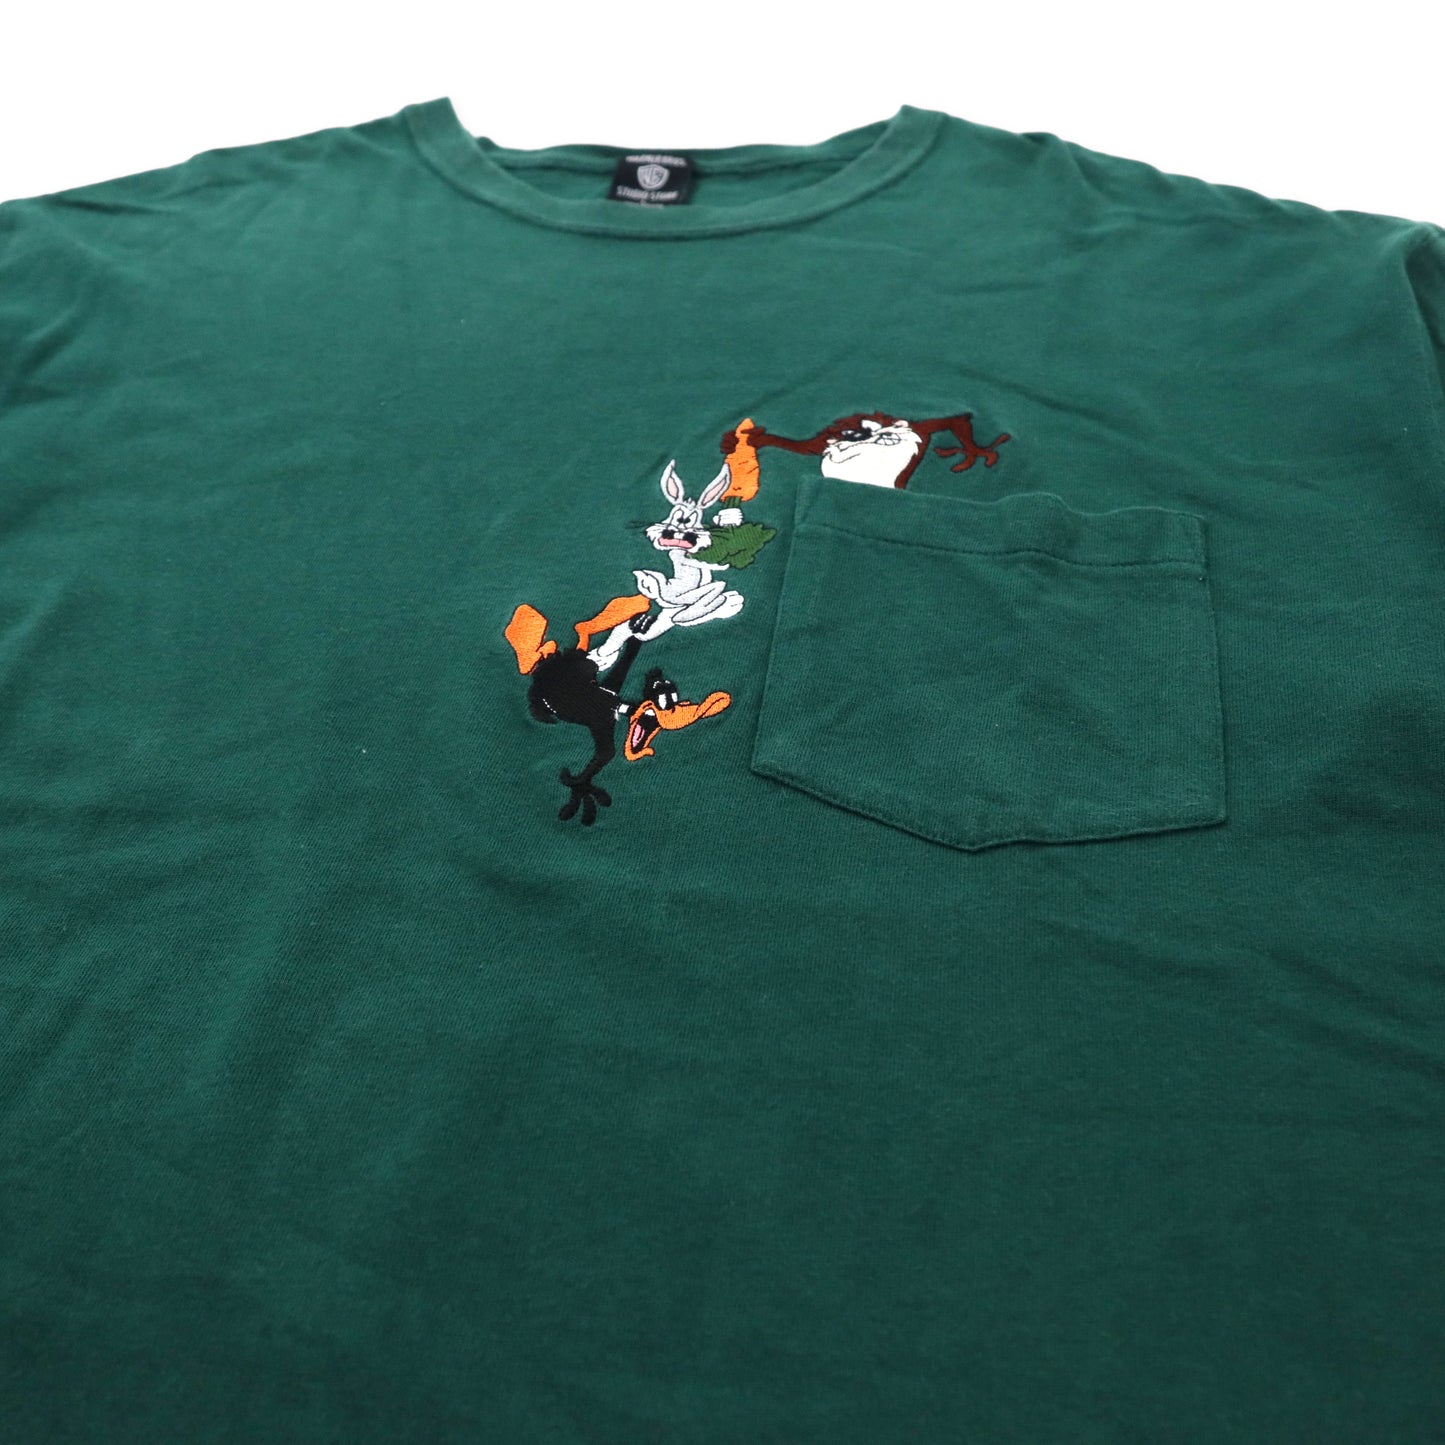 WARNER BROS 90年代 ビッグサイズ ポケットTシャツ L グリーン コットン キャラクター刺繍 Looney Tunes